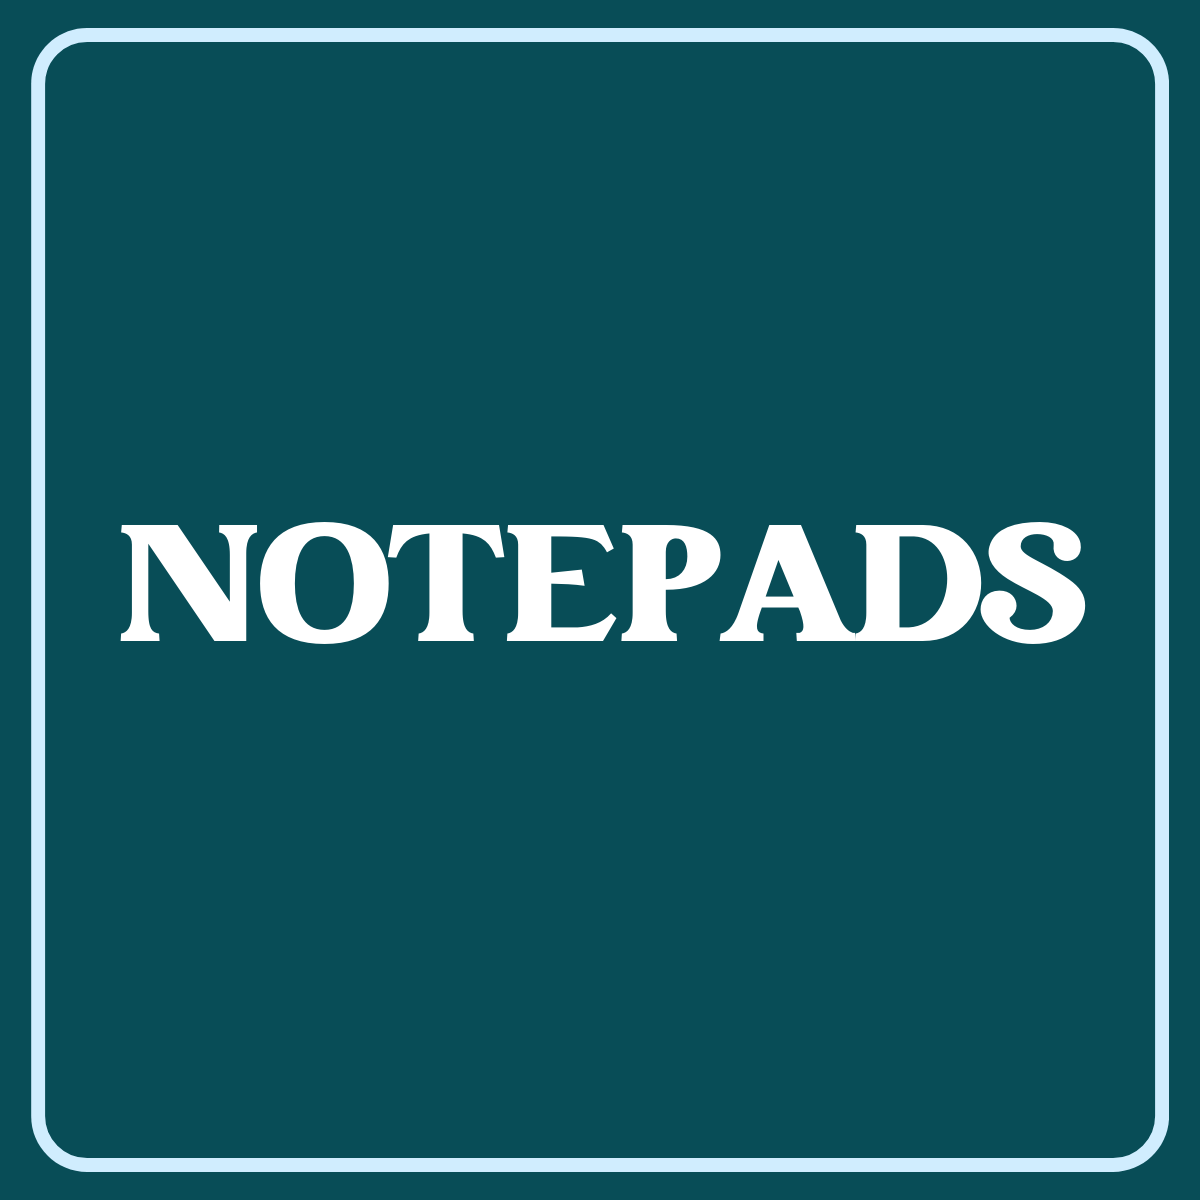 NOTEPADS